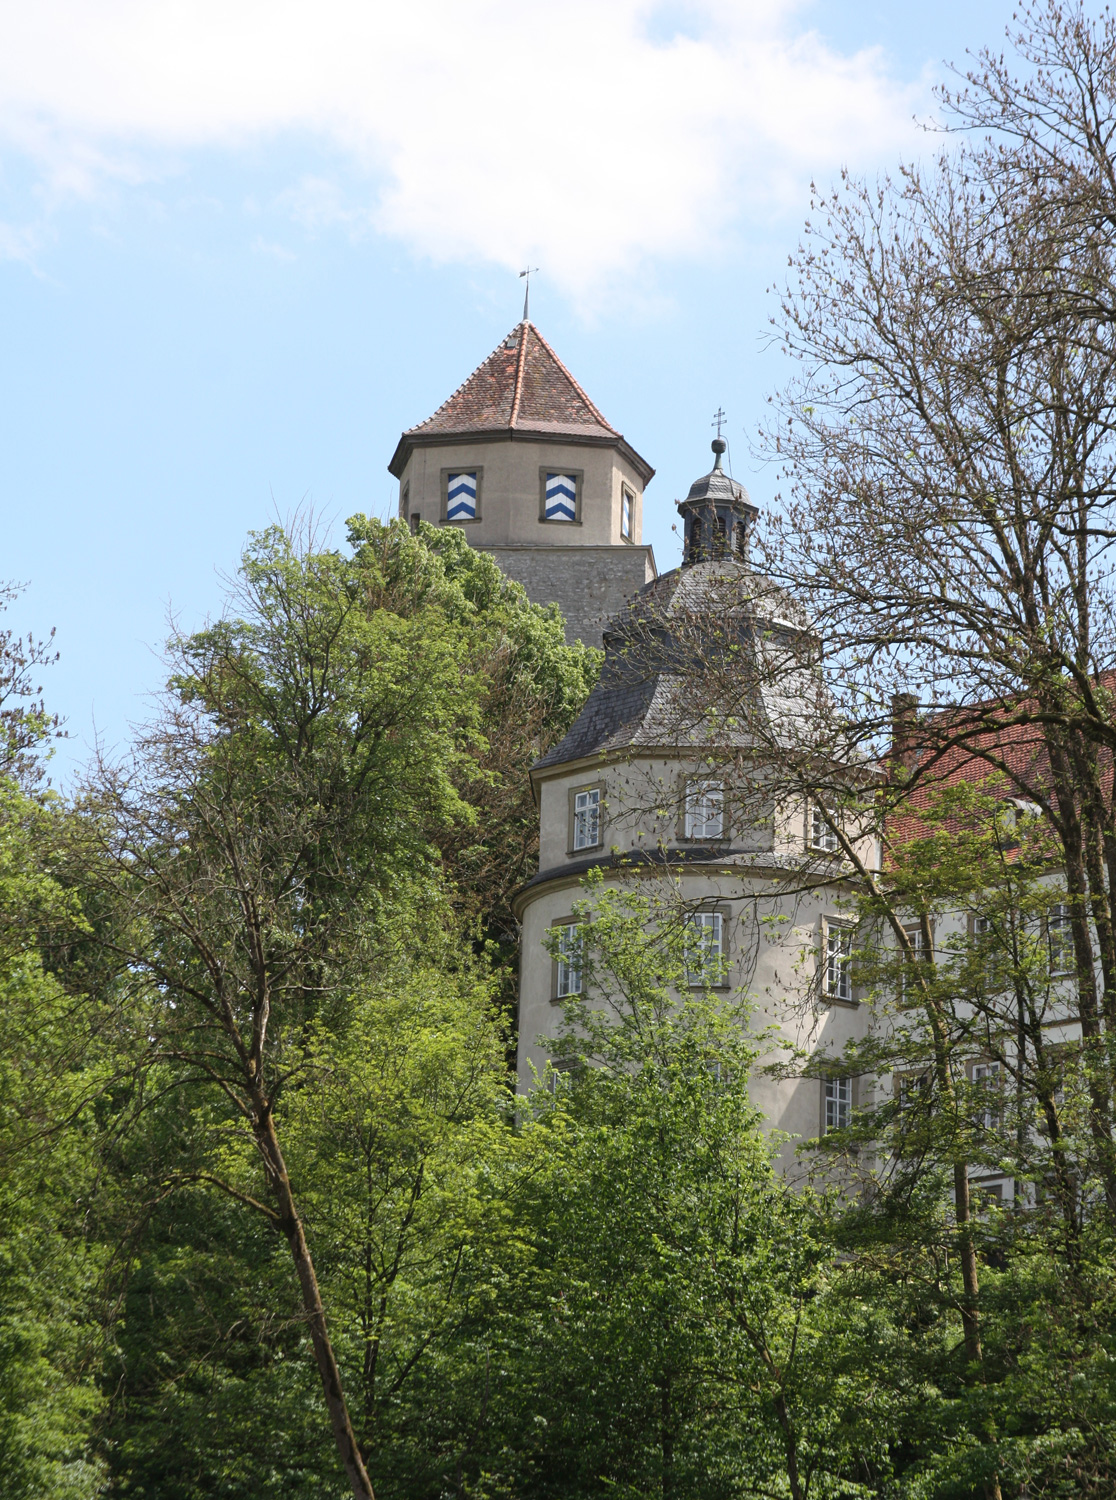 Schloss Aschhausen (Burg Aschhausen) im Hohenlohekreis